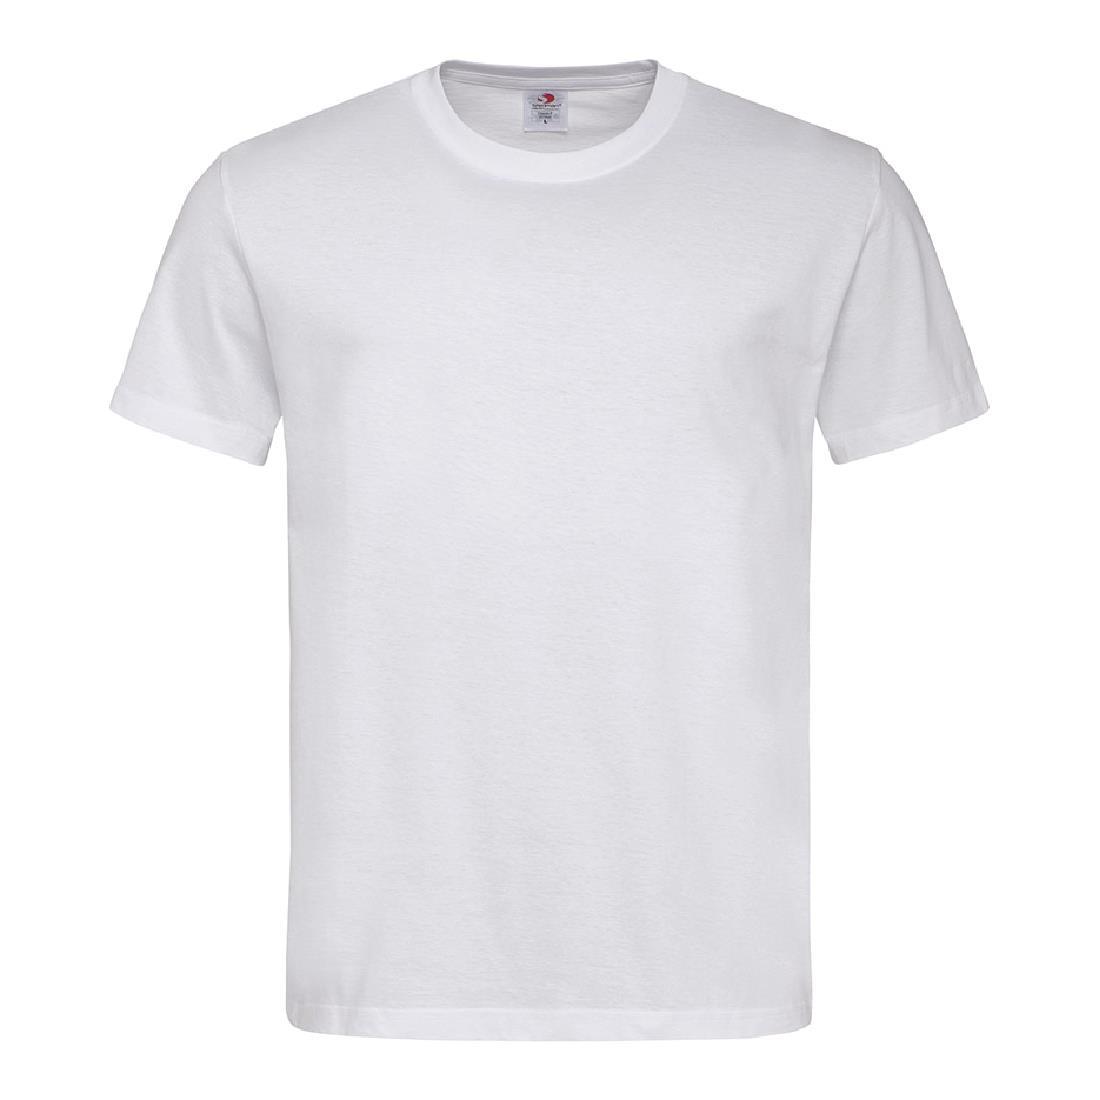 Unisex Chef T-Shirt White 4XL - A103-4XL  - 4